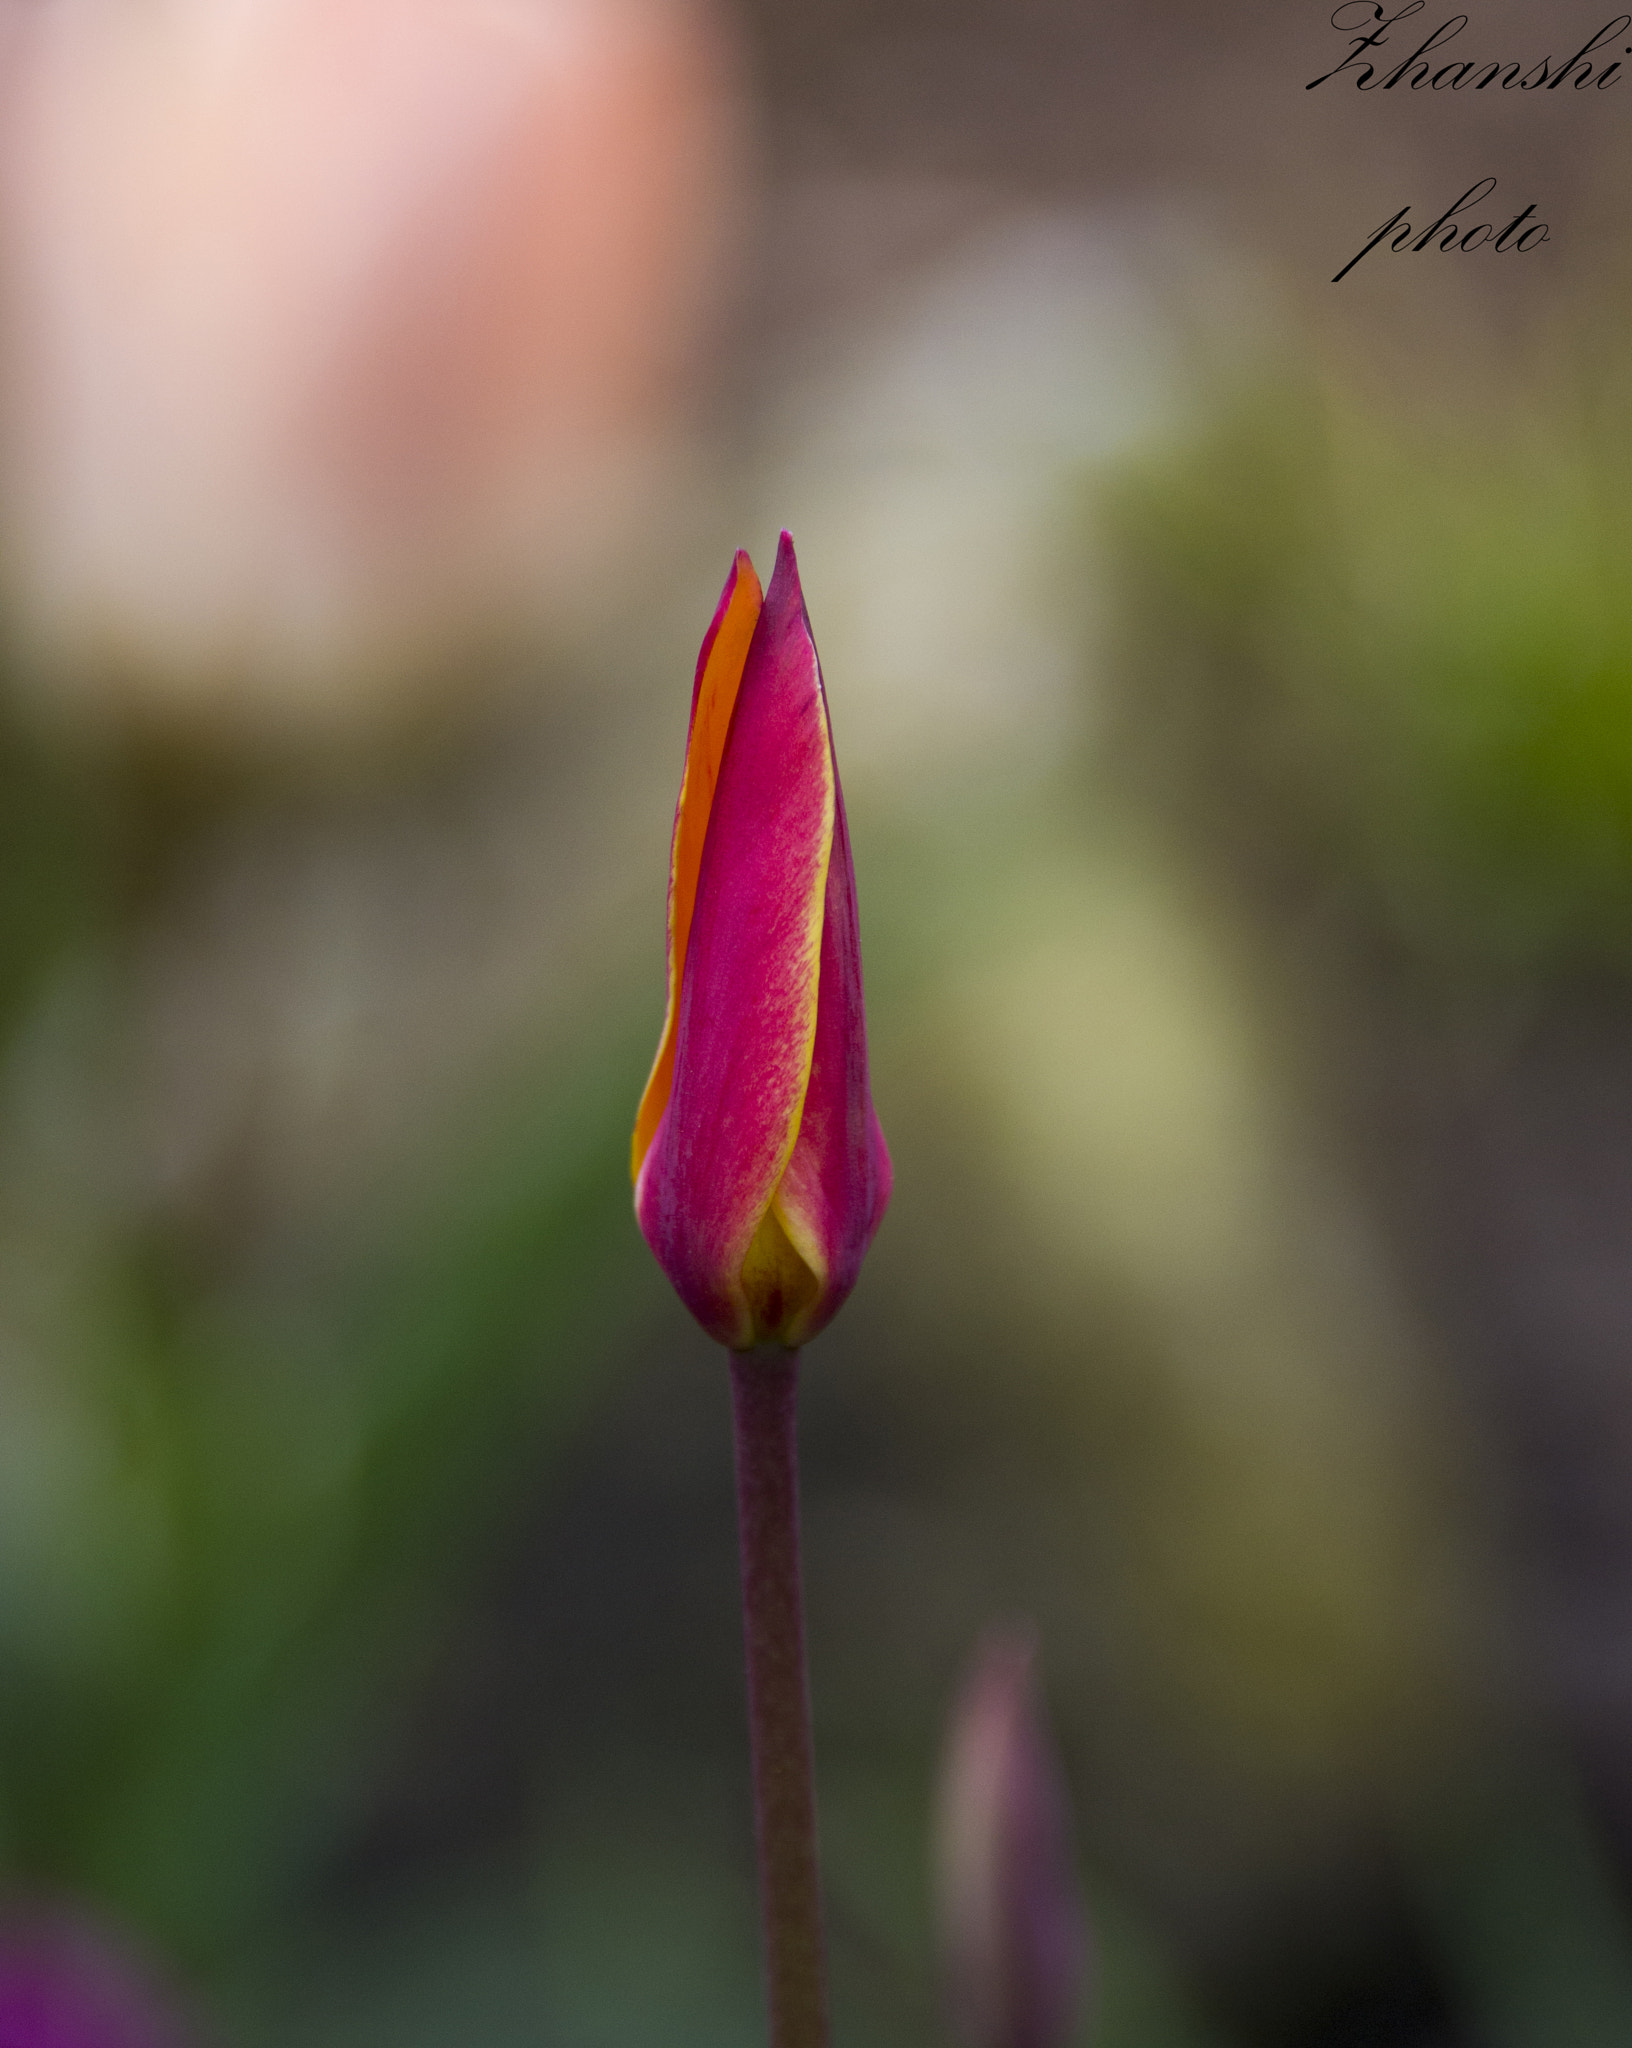 Nikon D3100 sample photo. Pink tulip photography